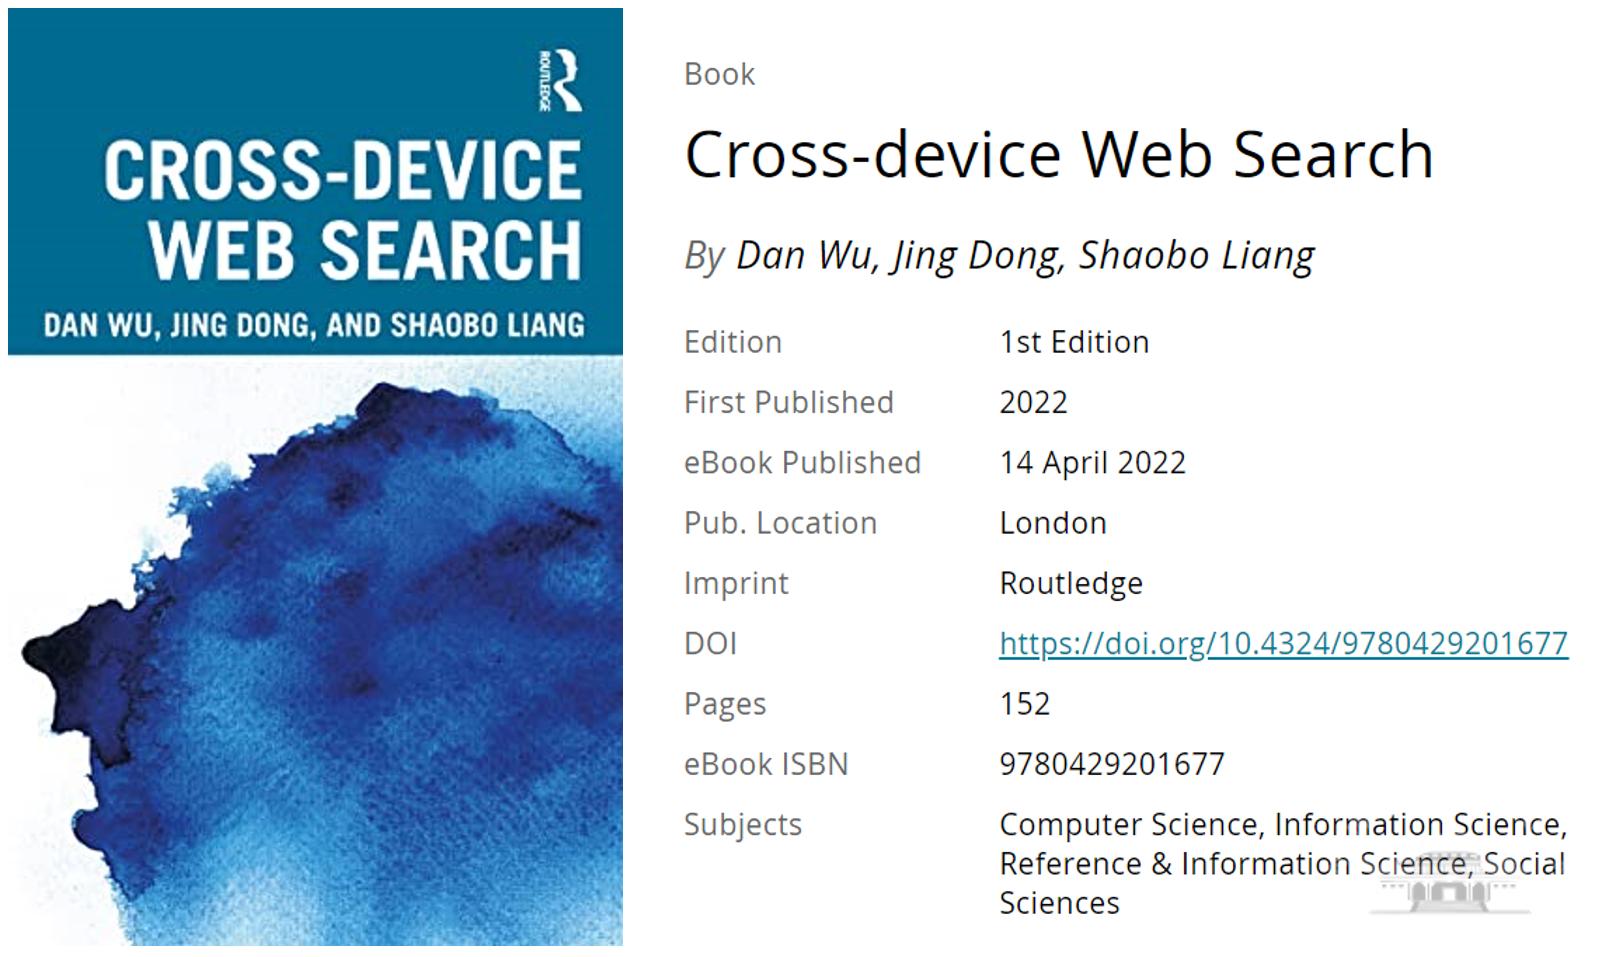 Routledge出版吴丹教授著作《跨设备网络搜索》